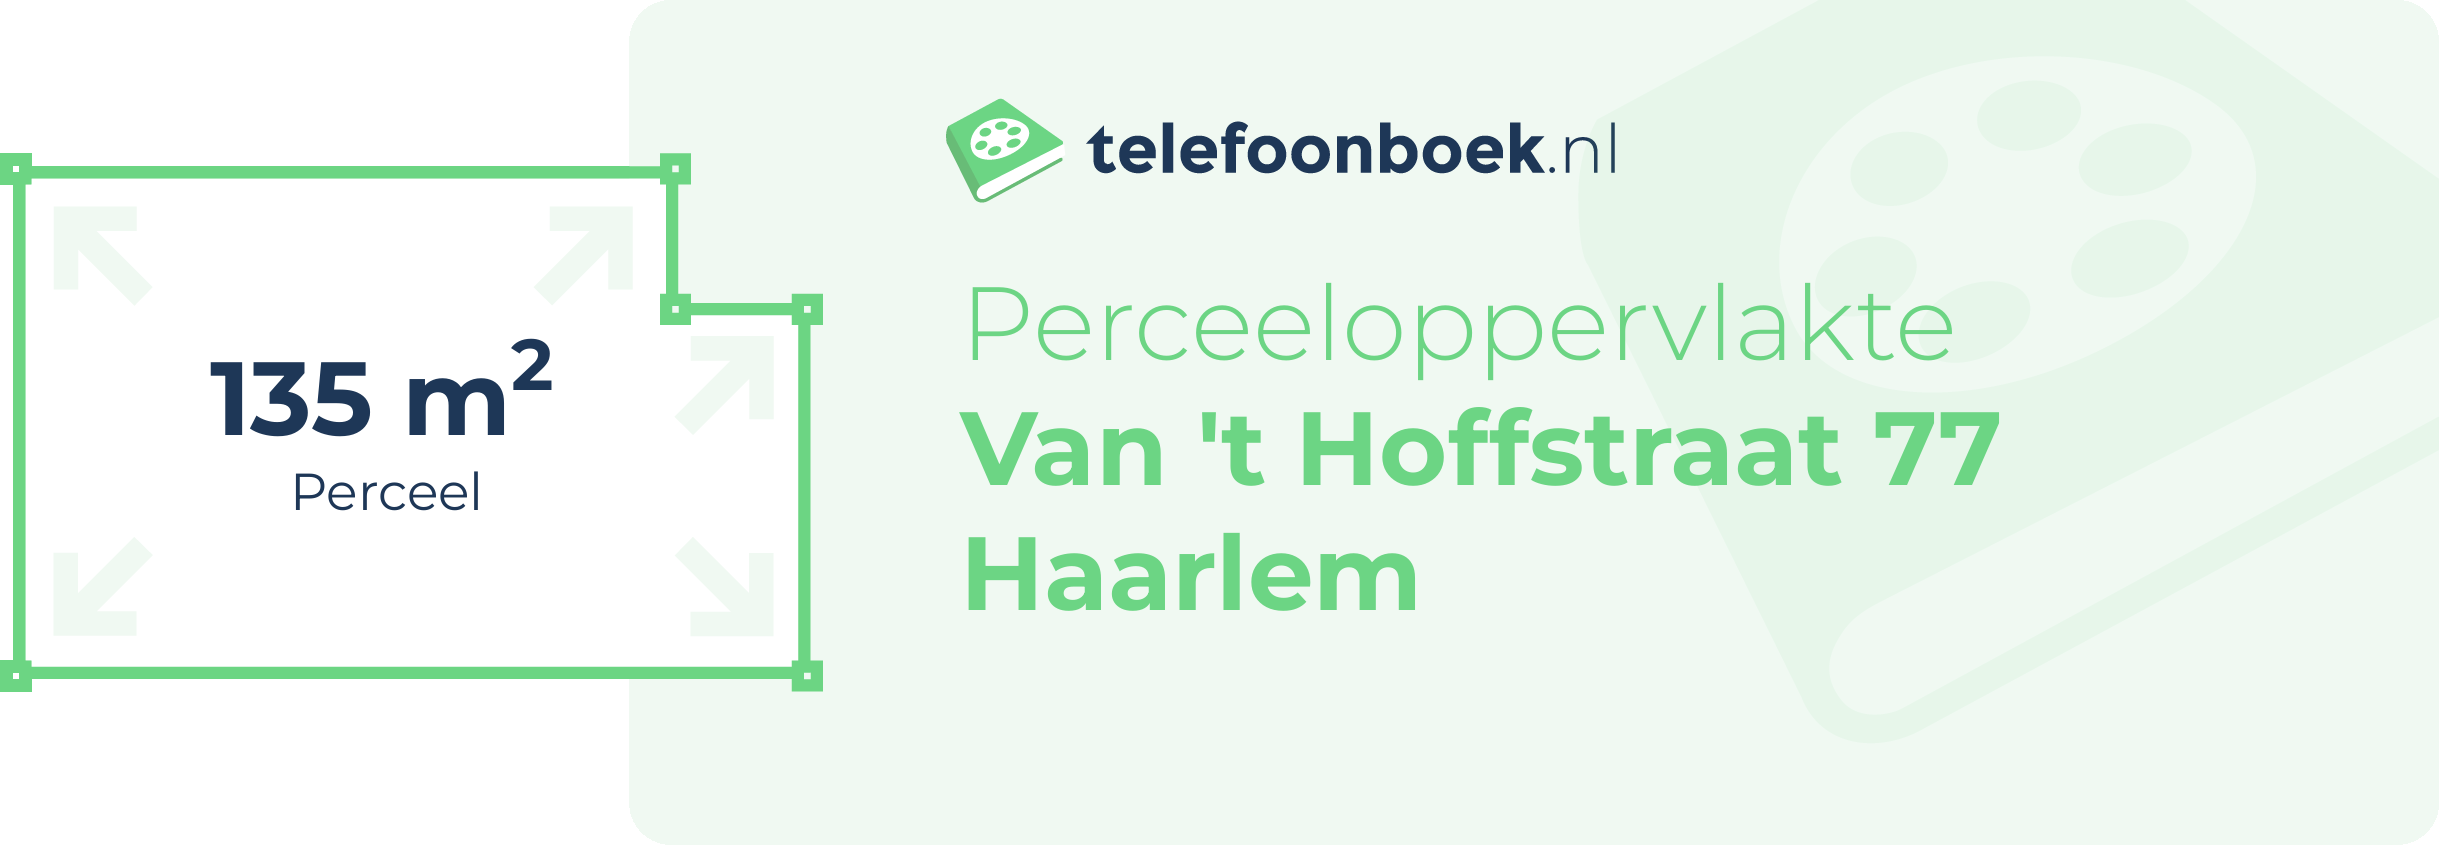 Perceeloppervlakte Van 't Hoffstraat 77 Haarlem